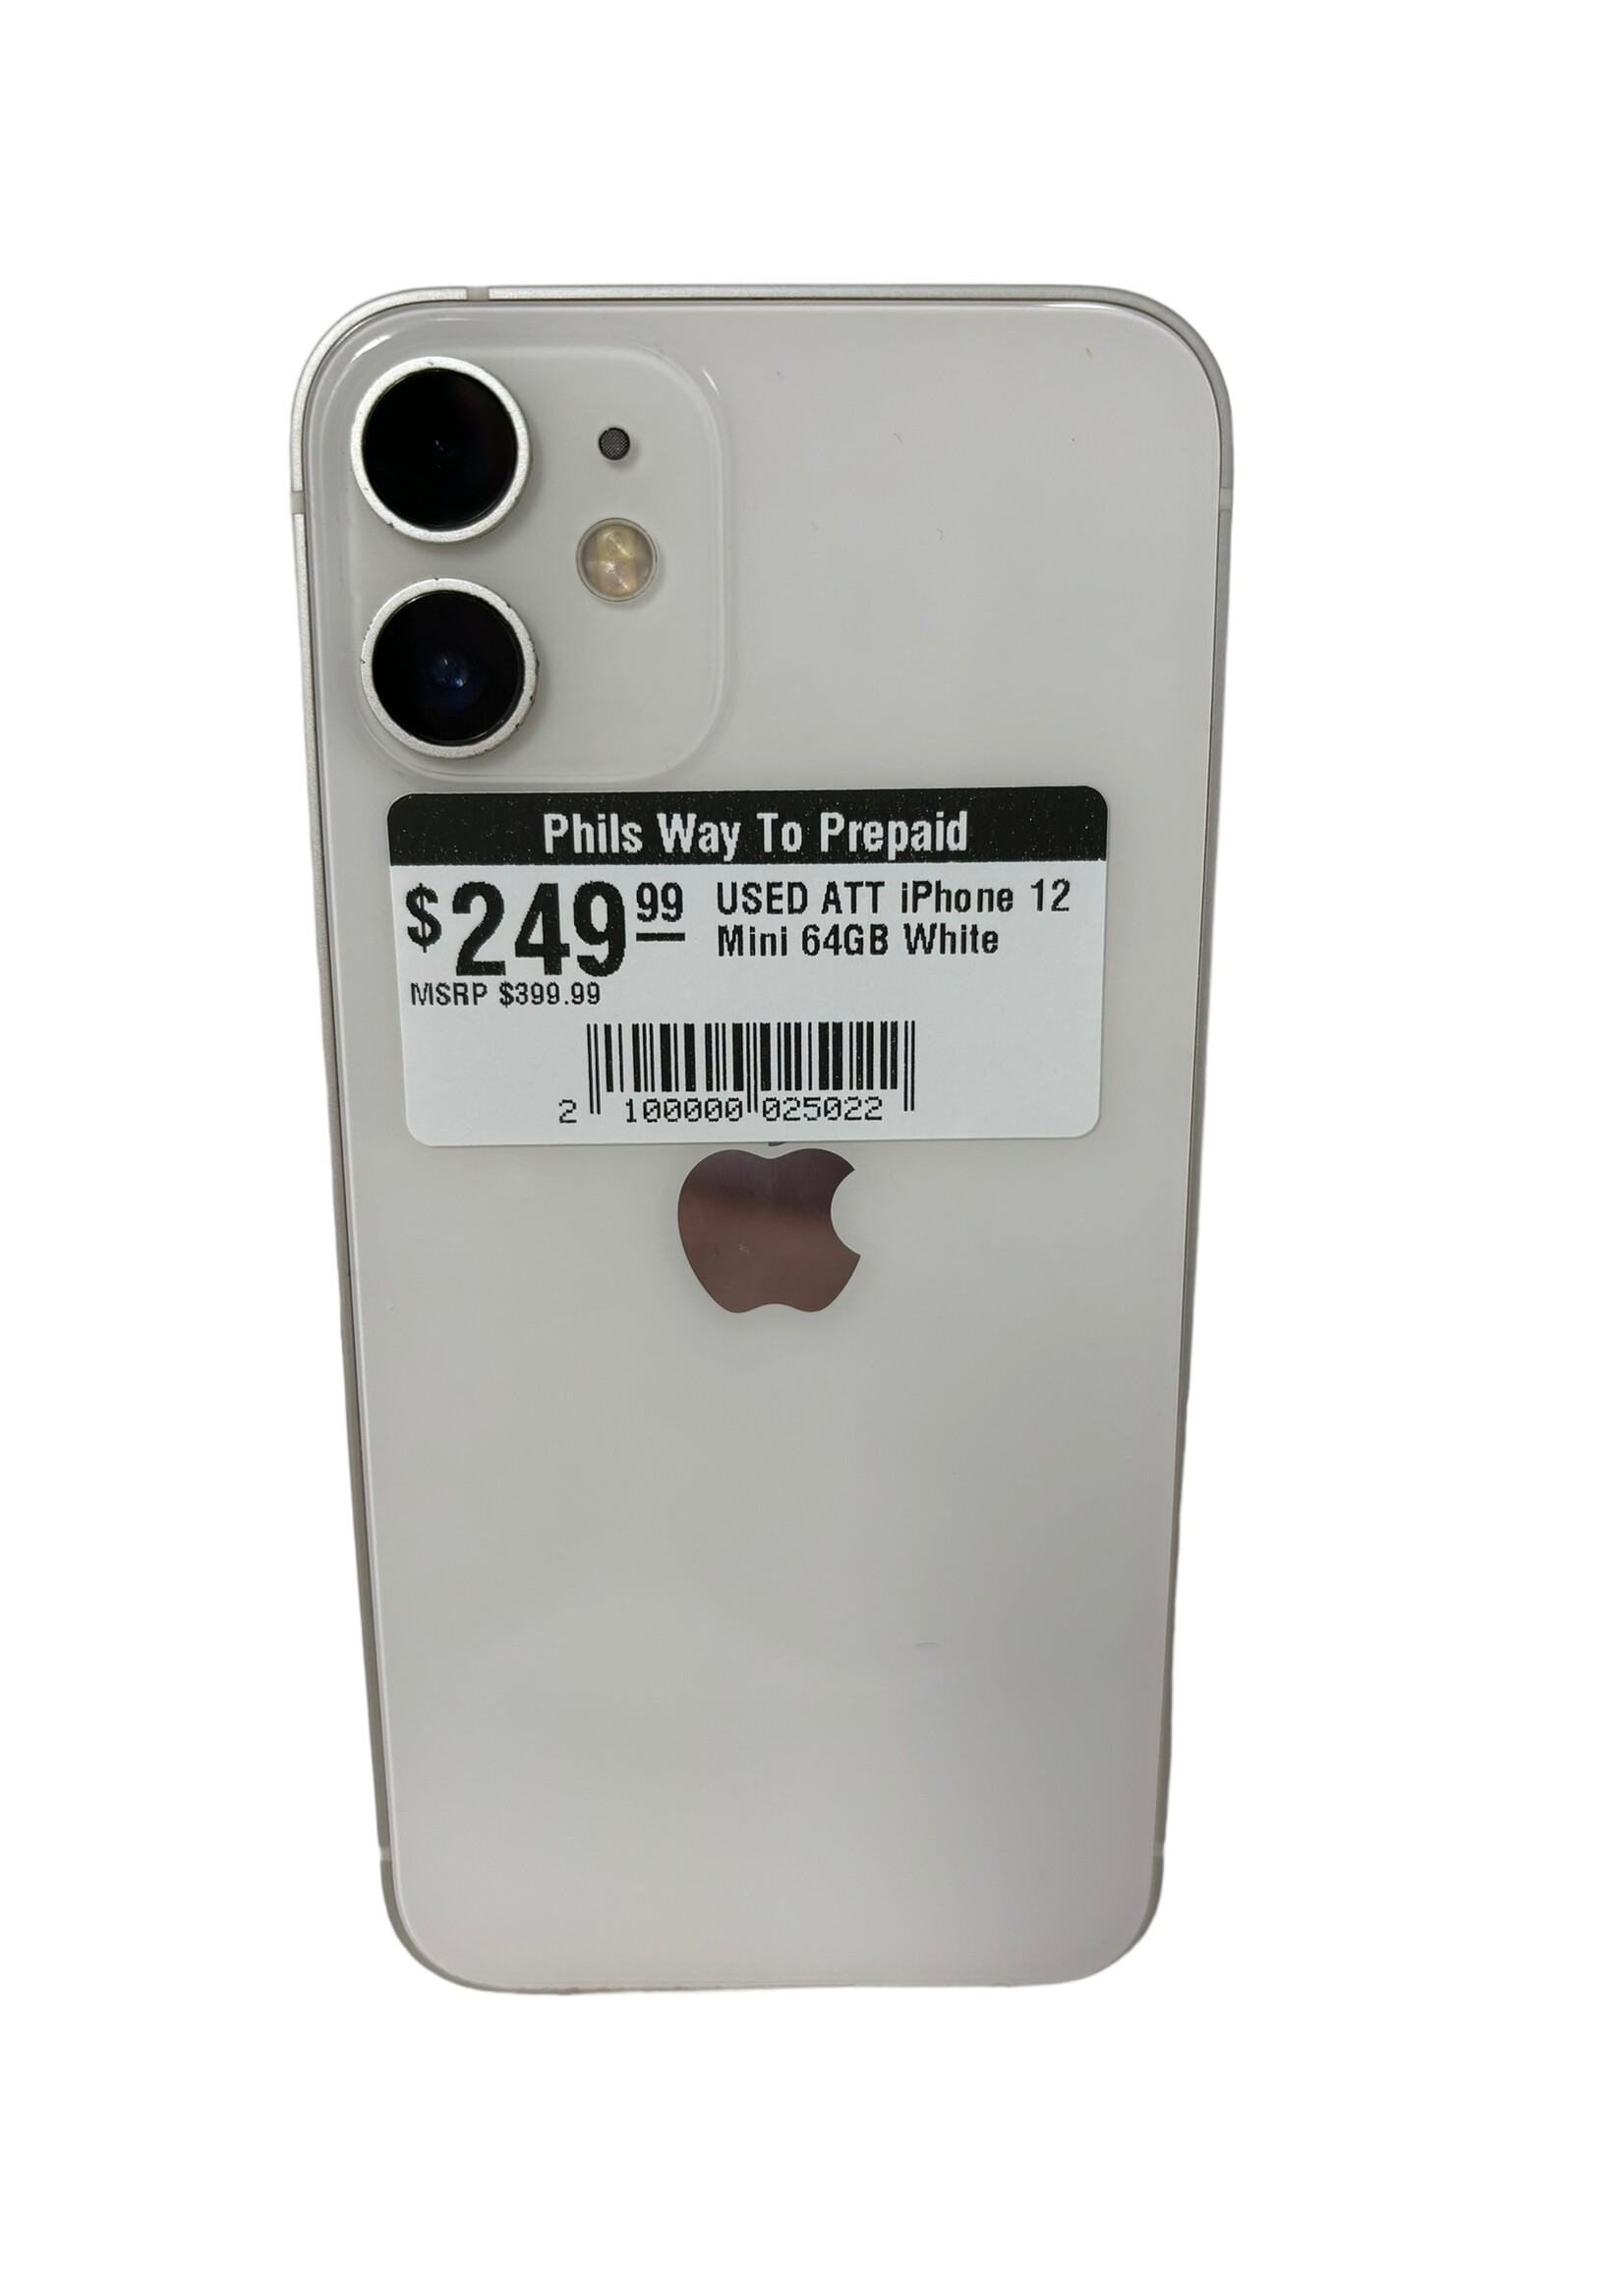 Apple USED ATT iPhone 12 Mini 64GB White